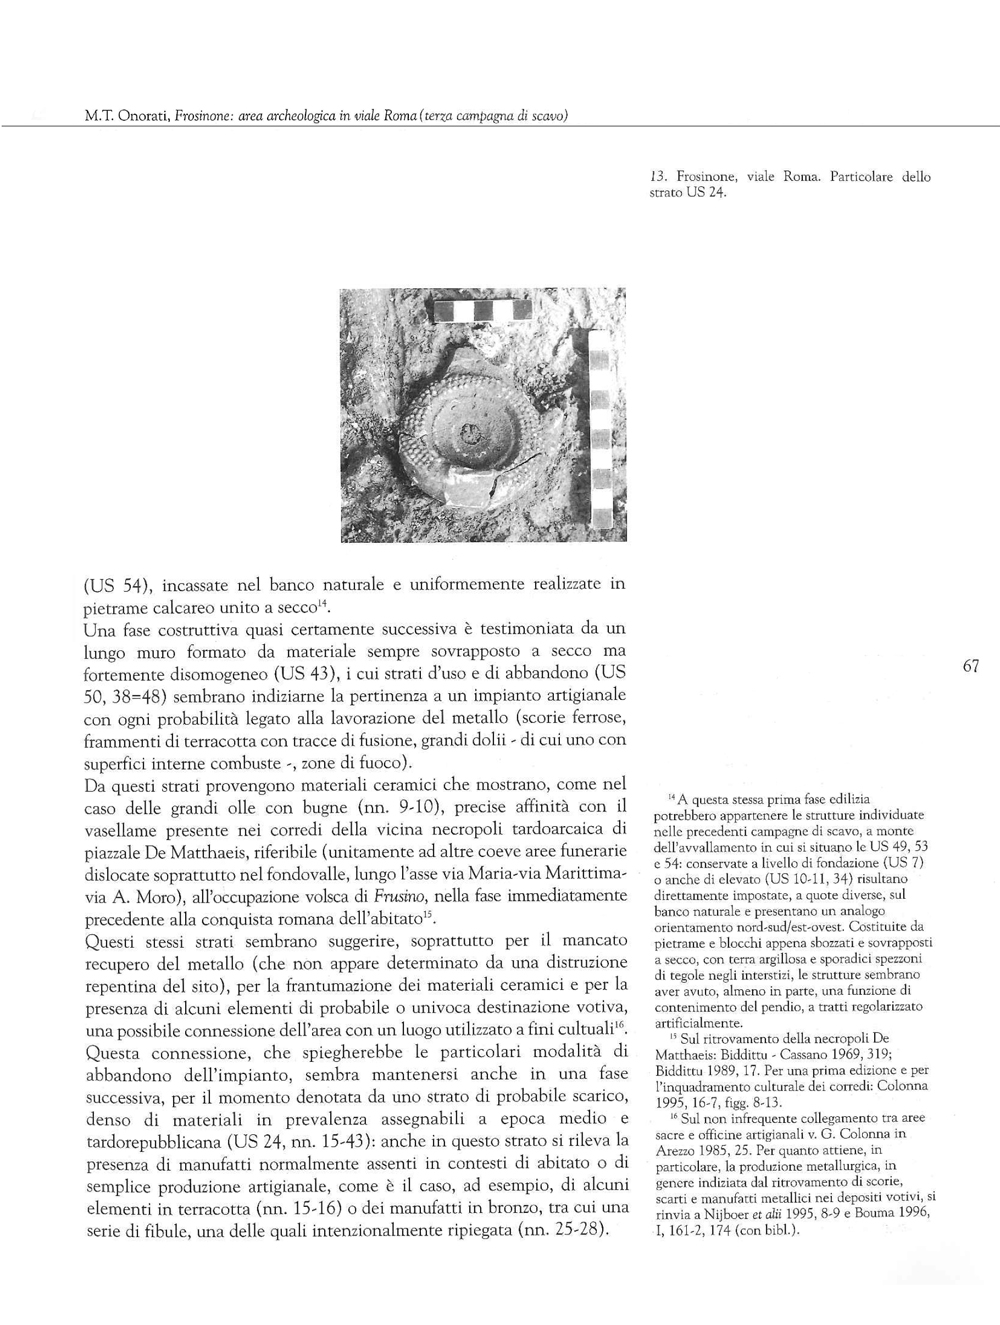 Terra dei Volsci. Annali del Museo Archeologico di Frosinone, 2013, ns, 1 Onorati